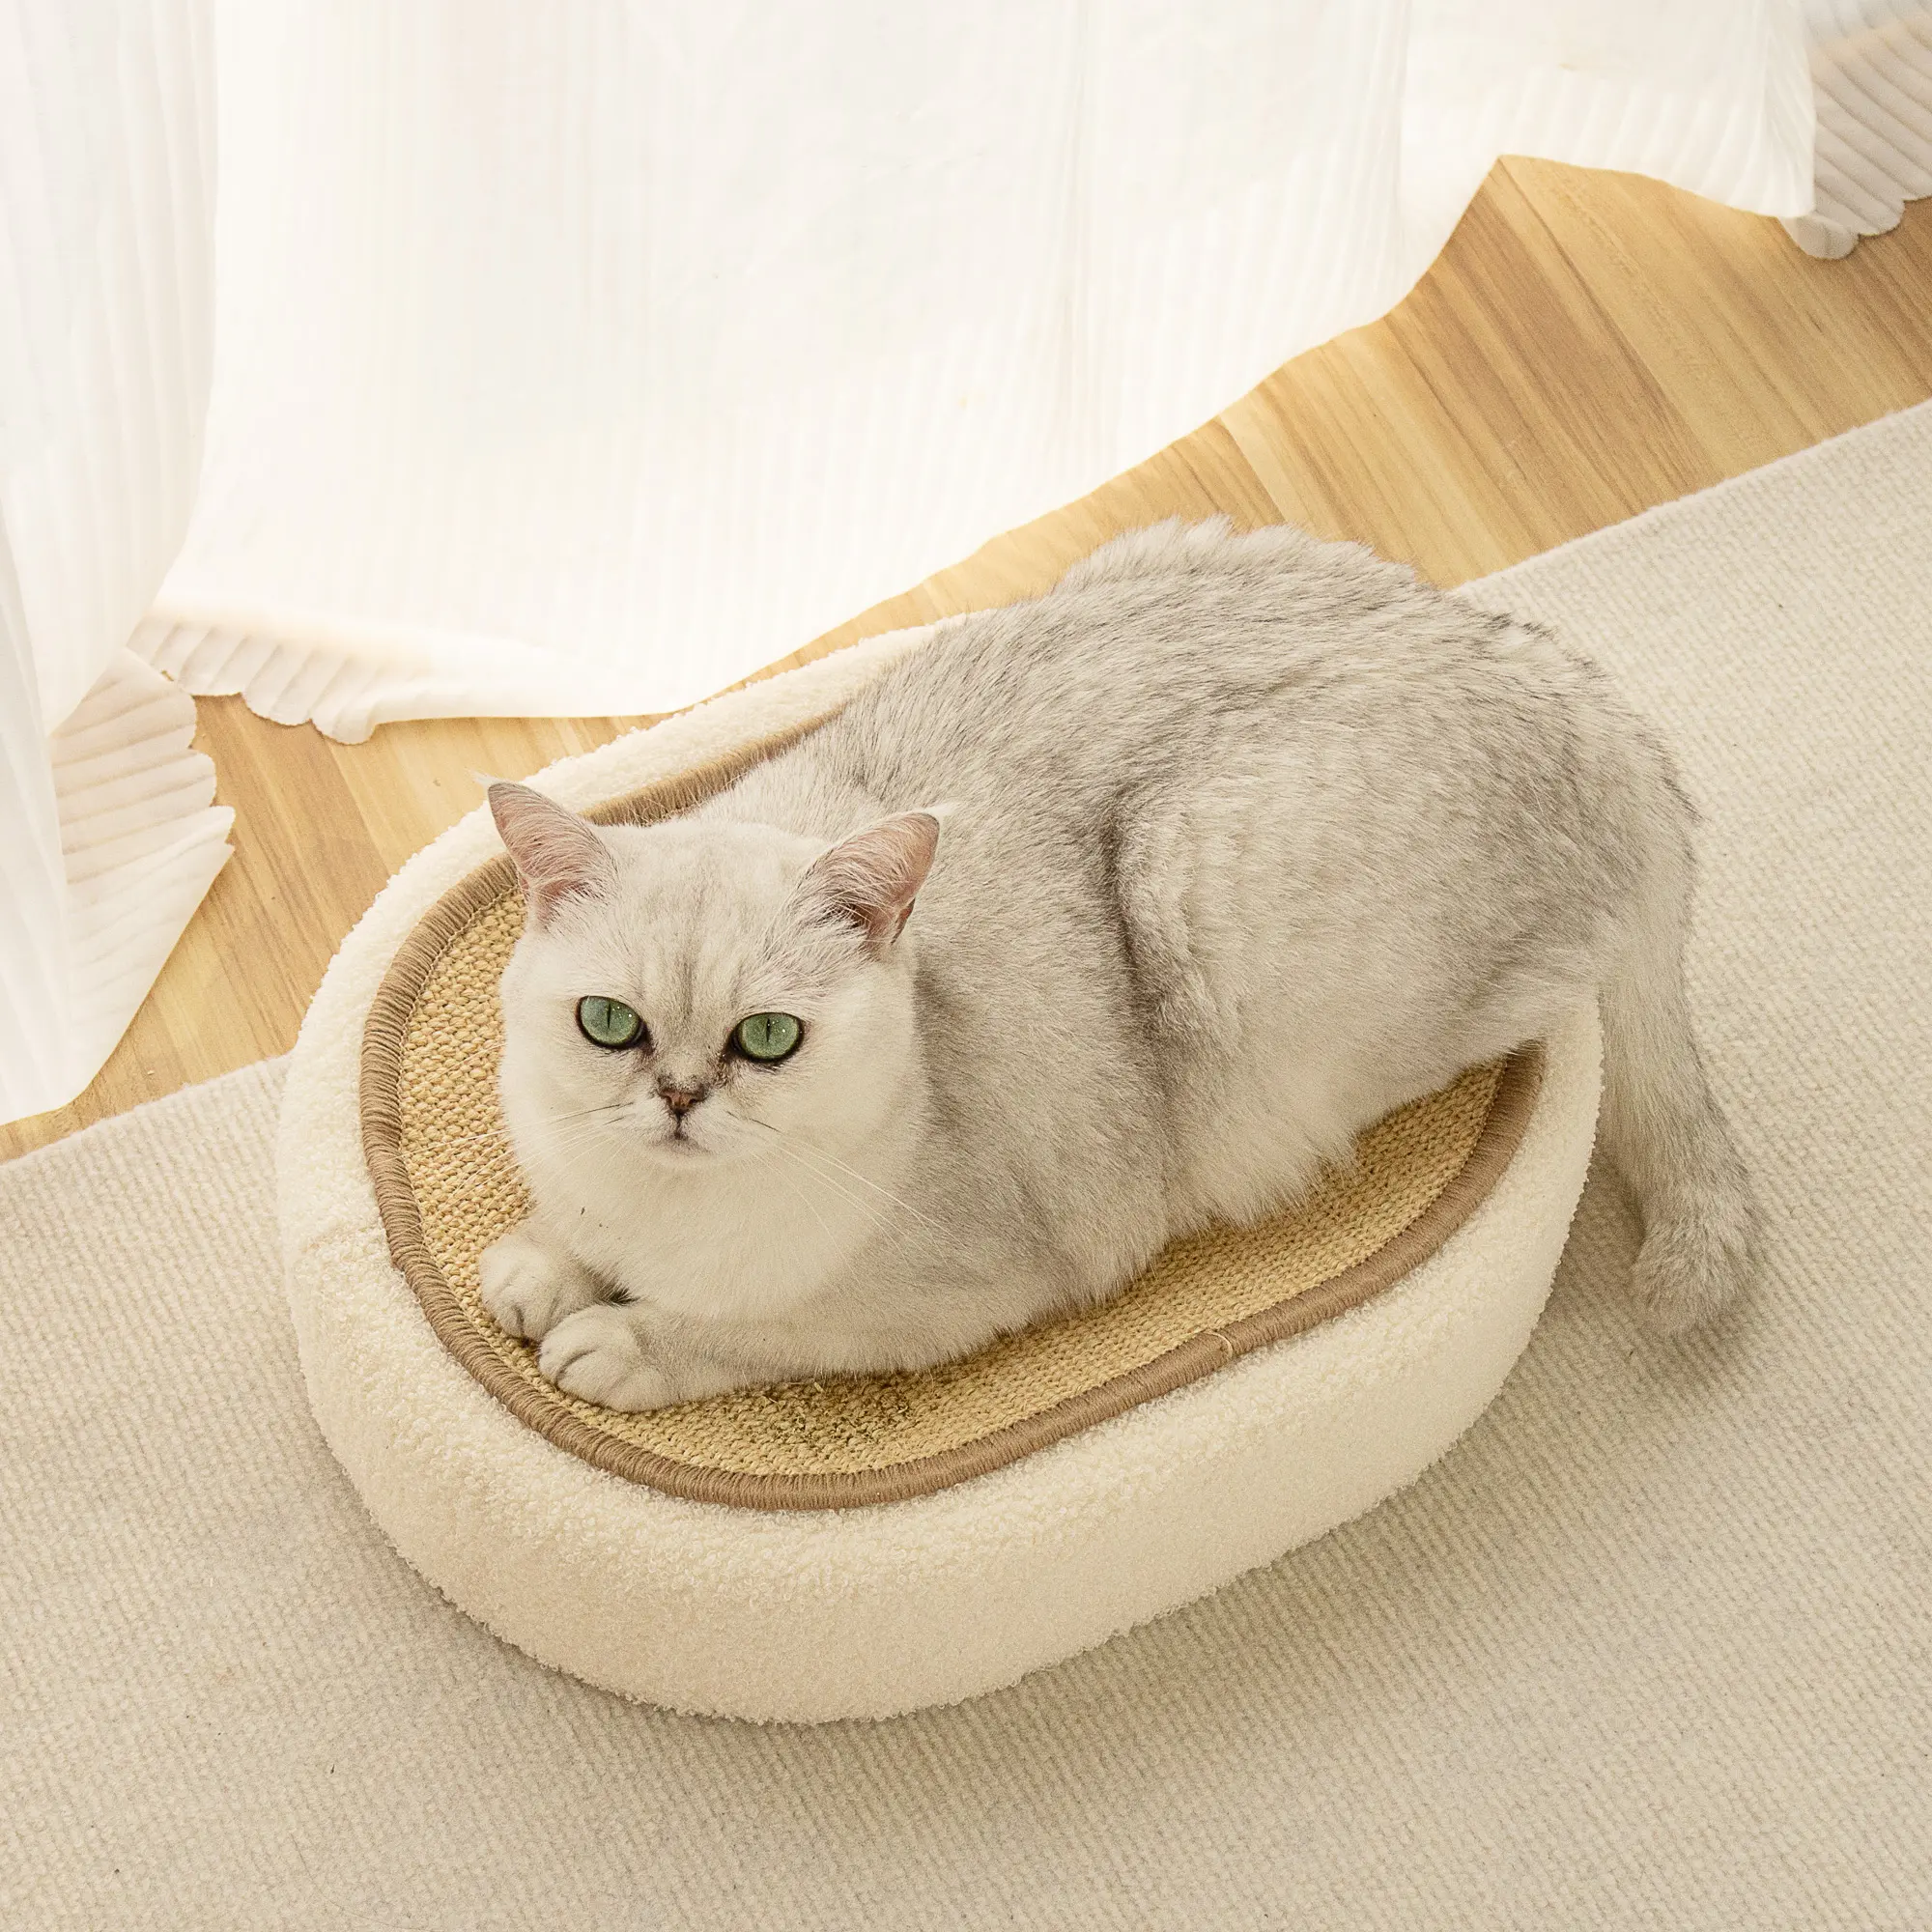 थोक गर्म बिक्री ओवल सिसल बिल्ली खरोंच बिस्तर प्यारा पालतू जानवर सोते हुए खेल रहा है